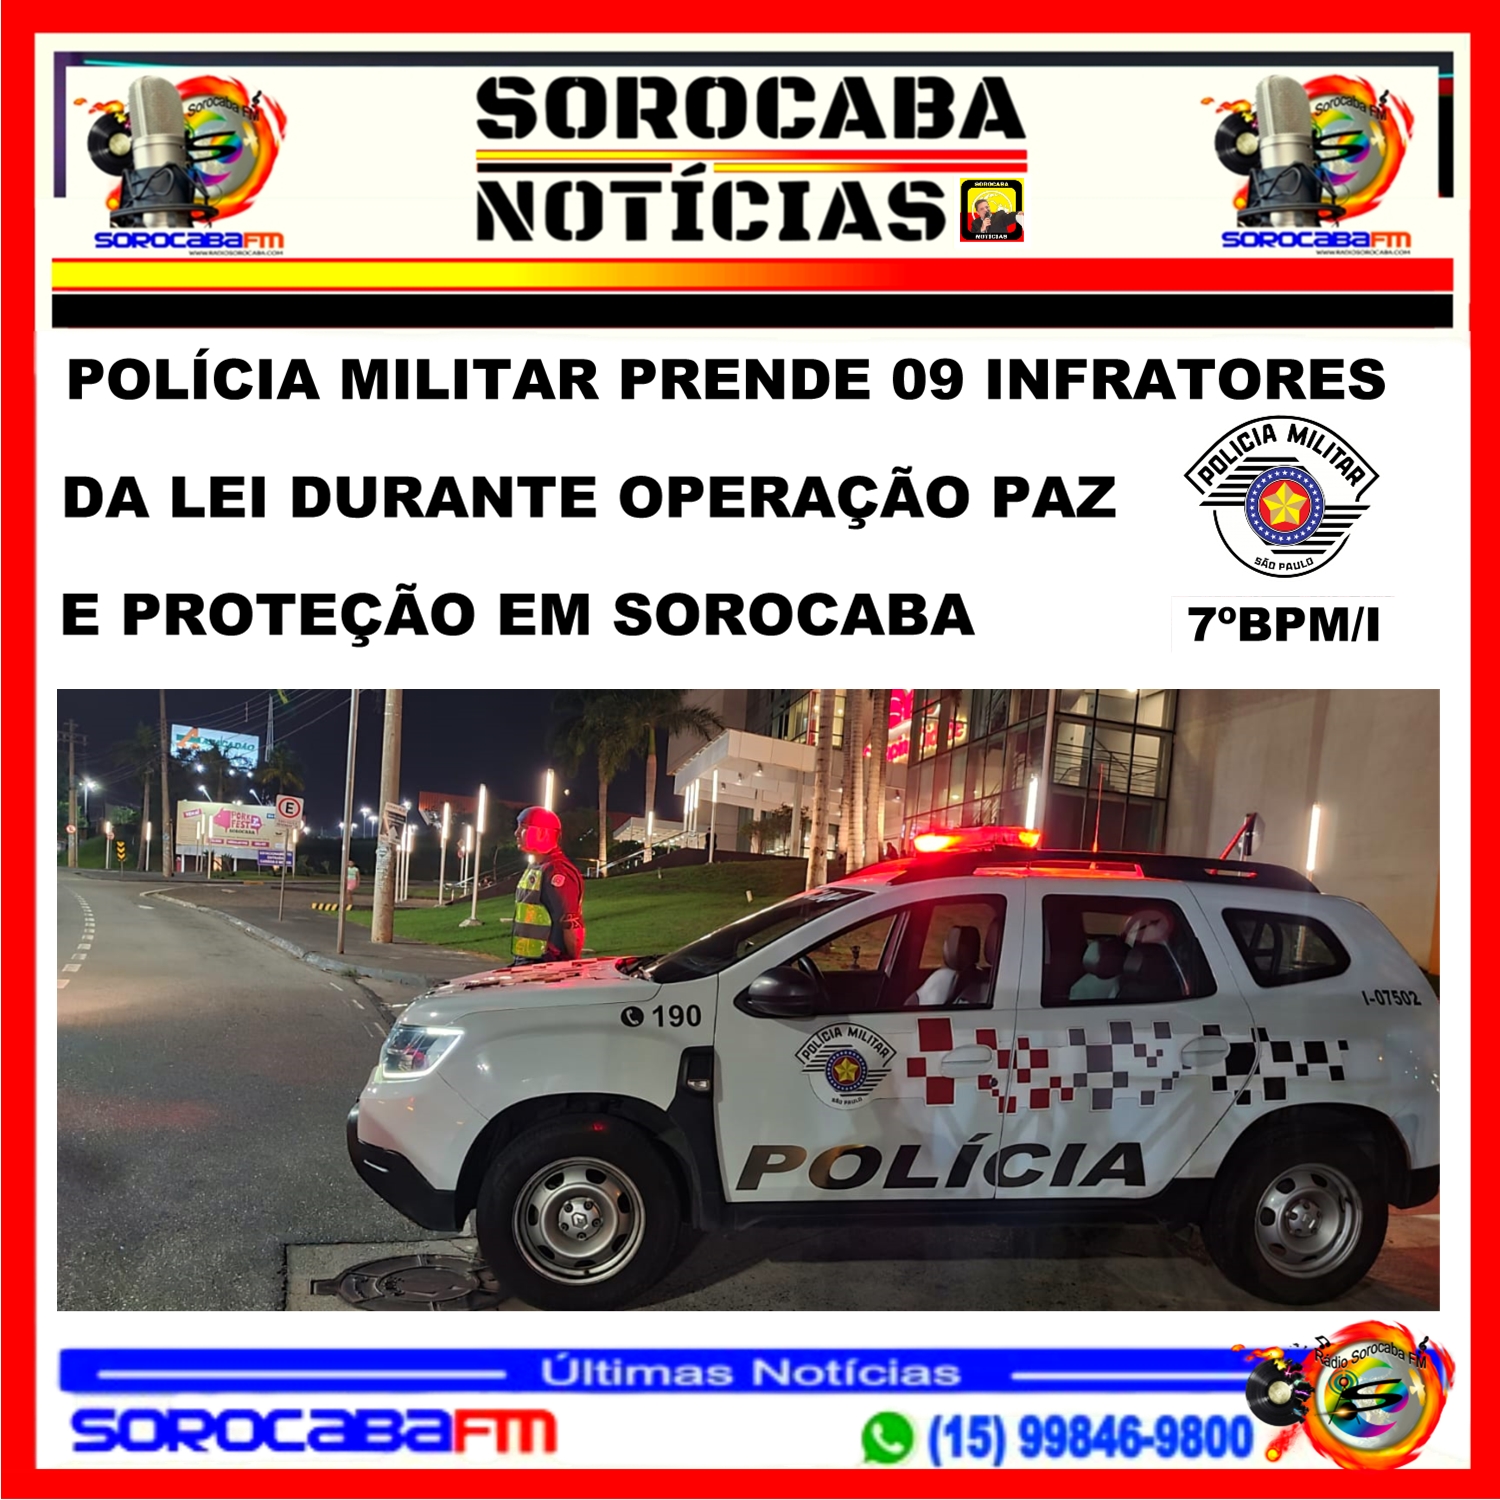 POLÍCIA MILITAR PRENDE 09 INFRATORES DA LEI DURANTE OPERAÇÃO PAZ E PROTEÇÃO EM SOROCABA